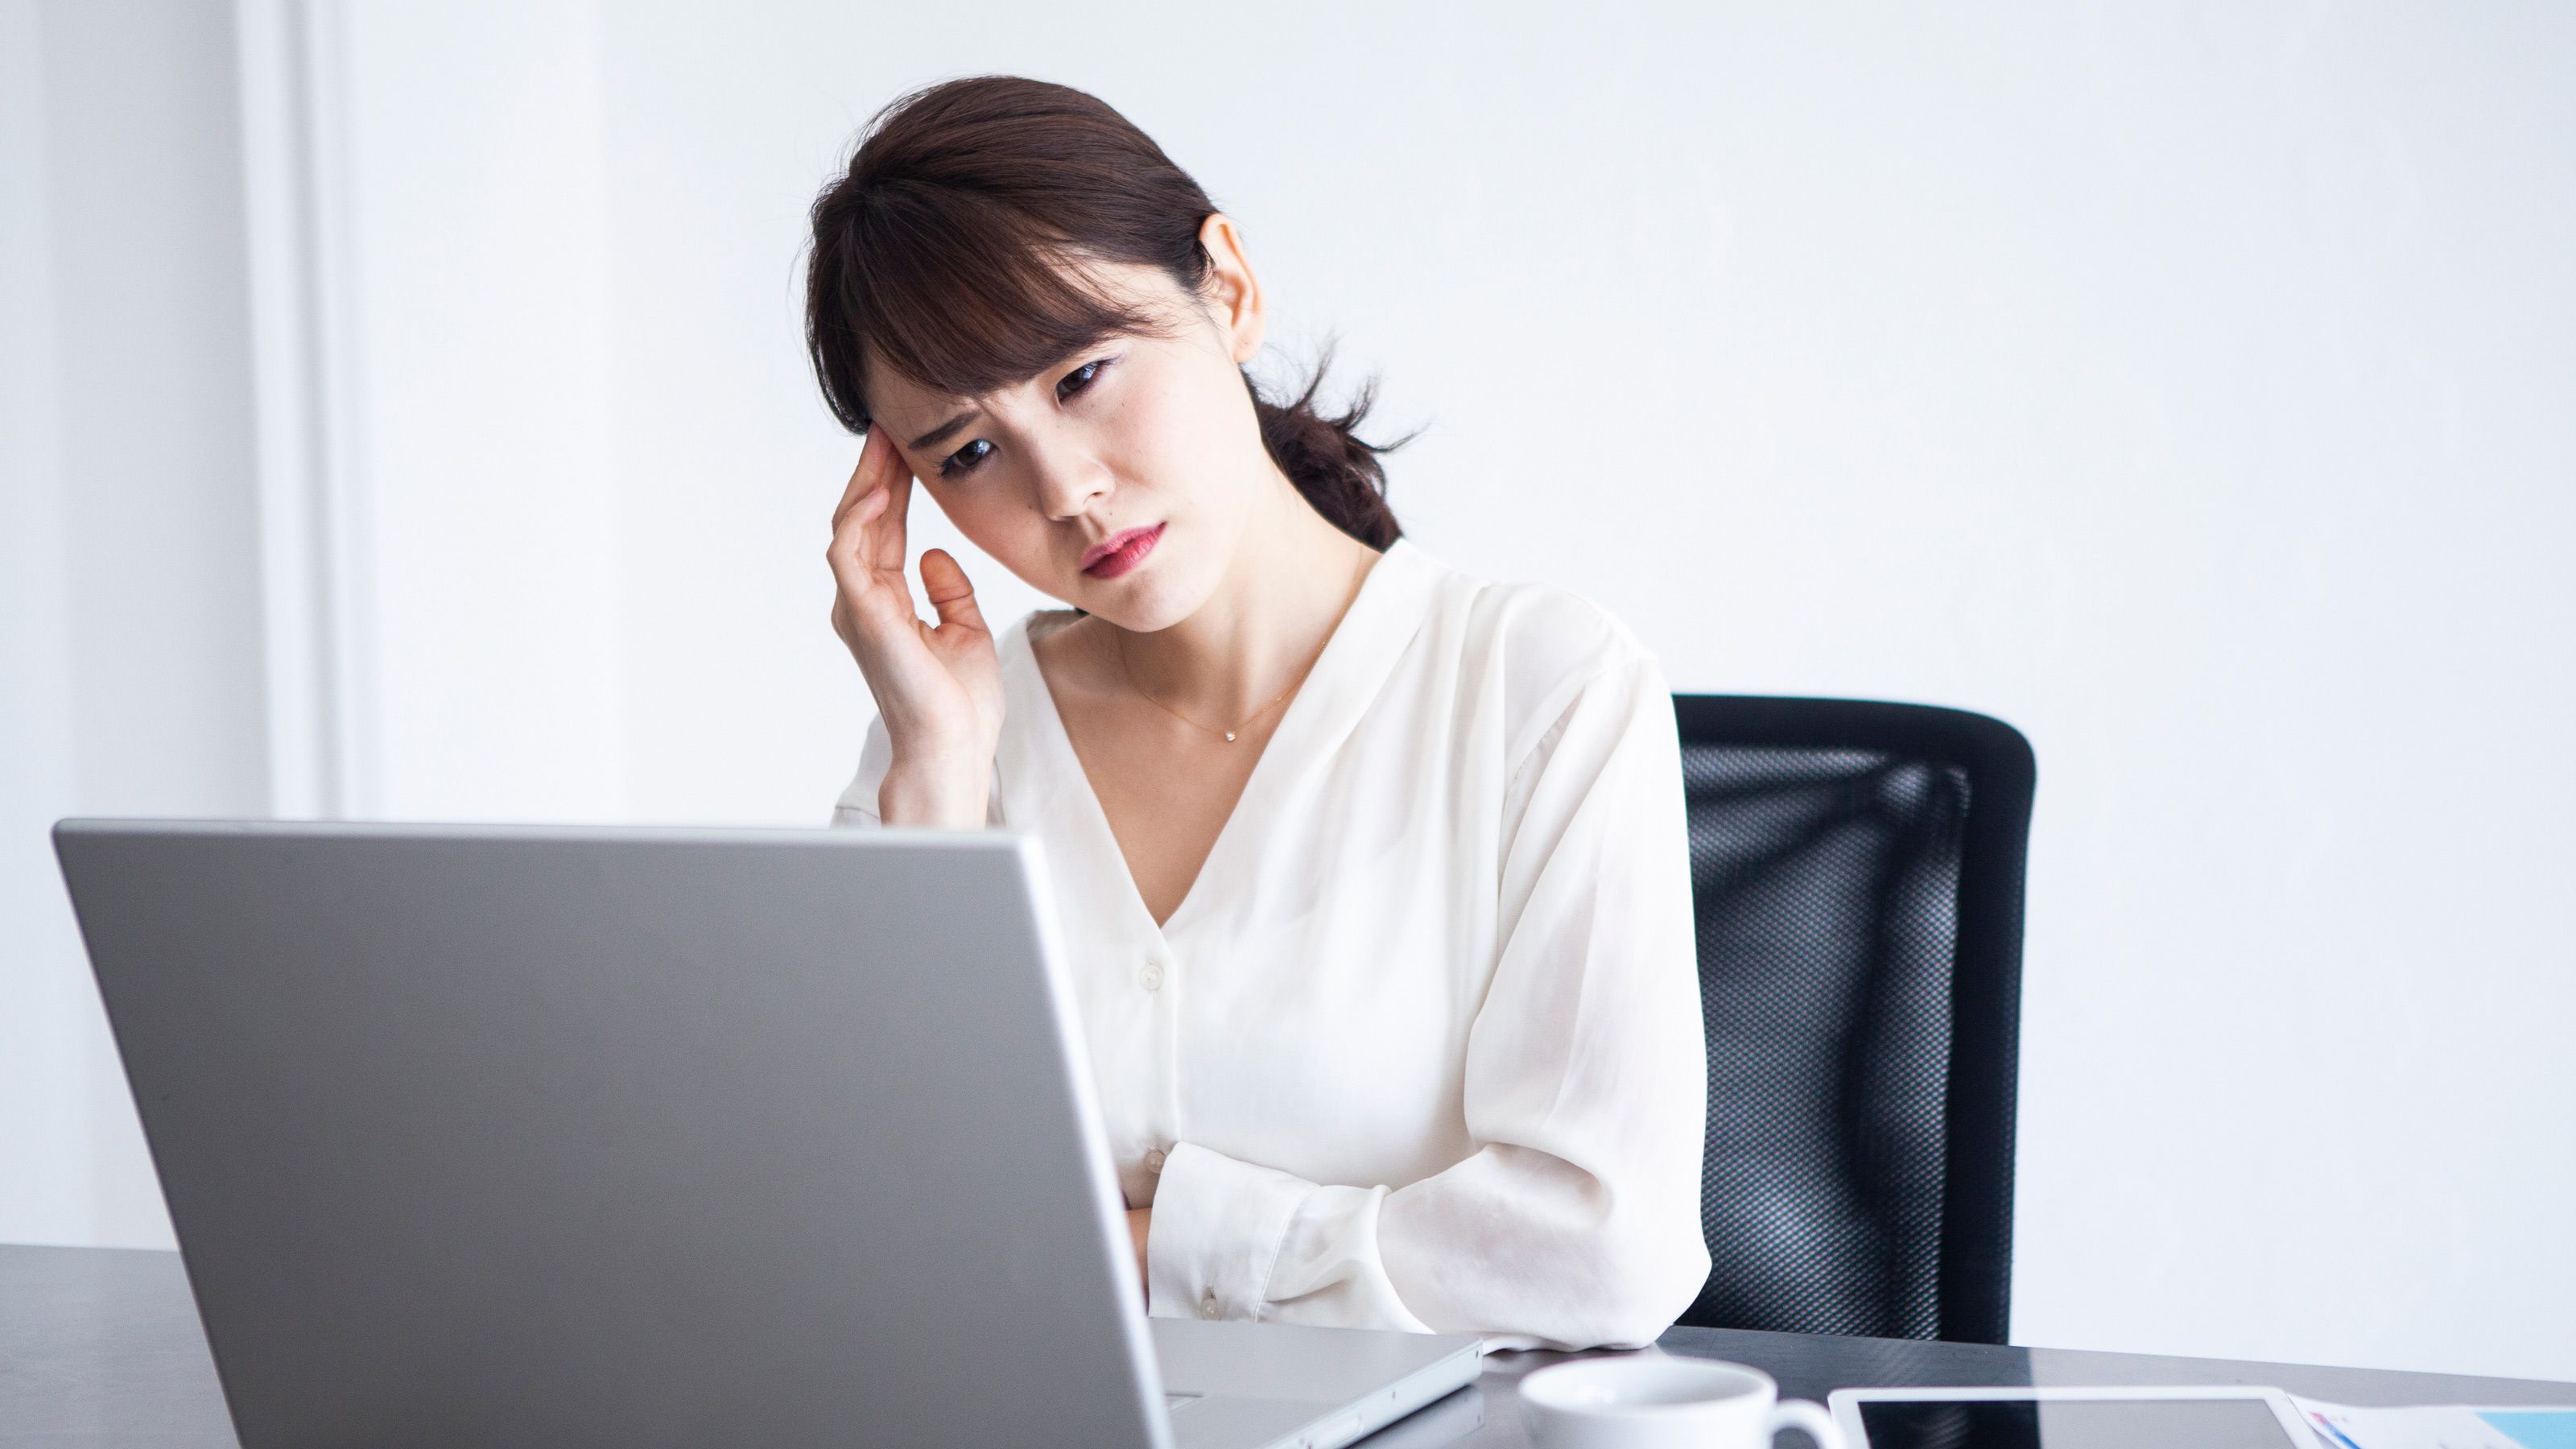 欧米では仕事を休む疾患として認知｡30代女性の2割が抱えている｢片頭痛｣対処法とは PRESIDENT